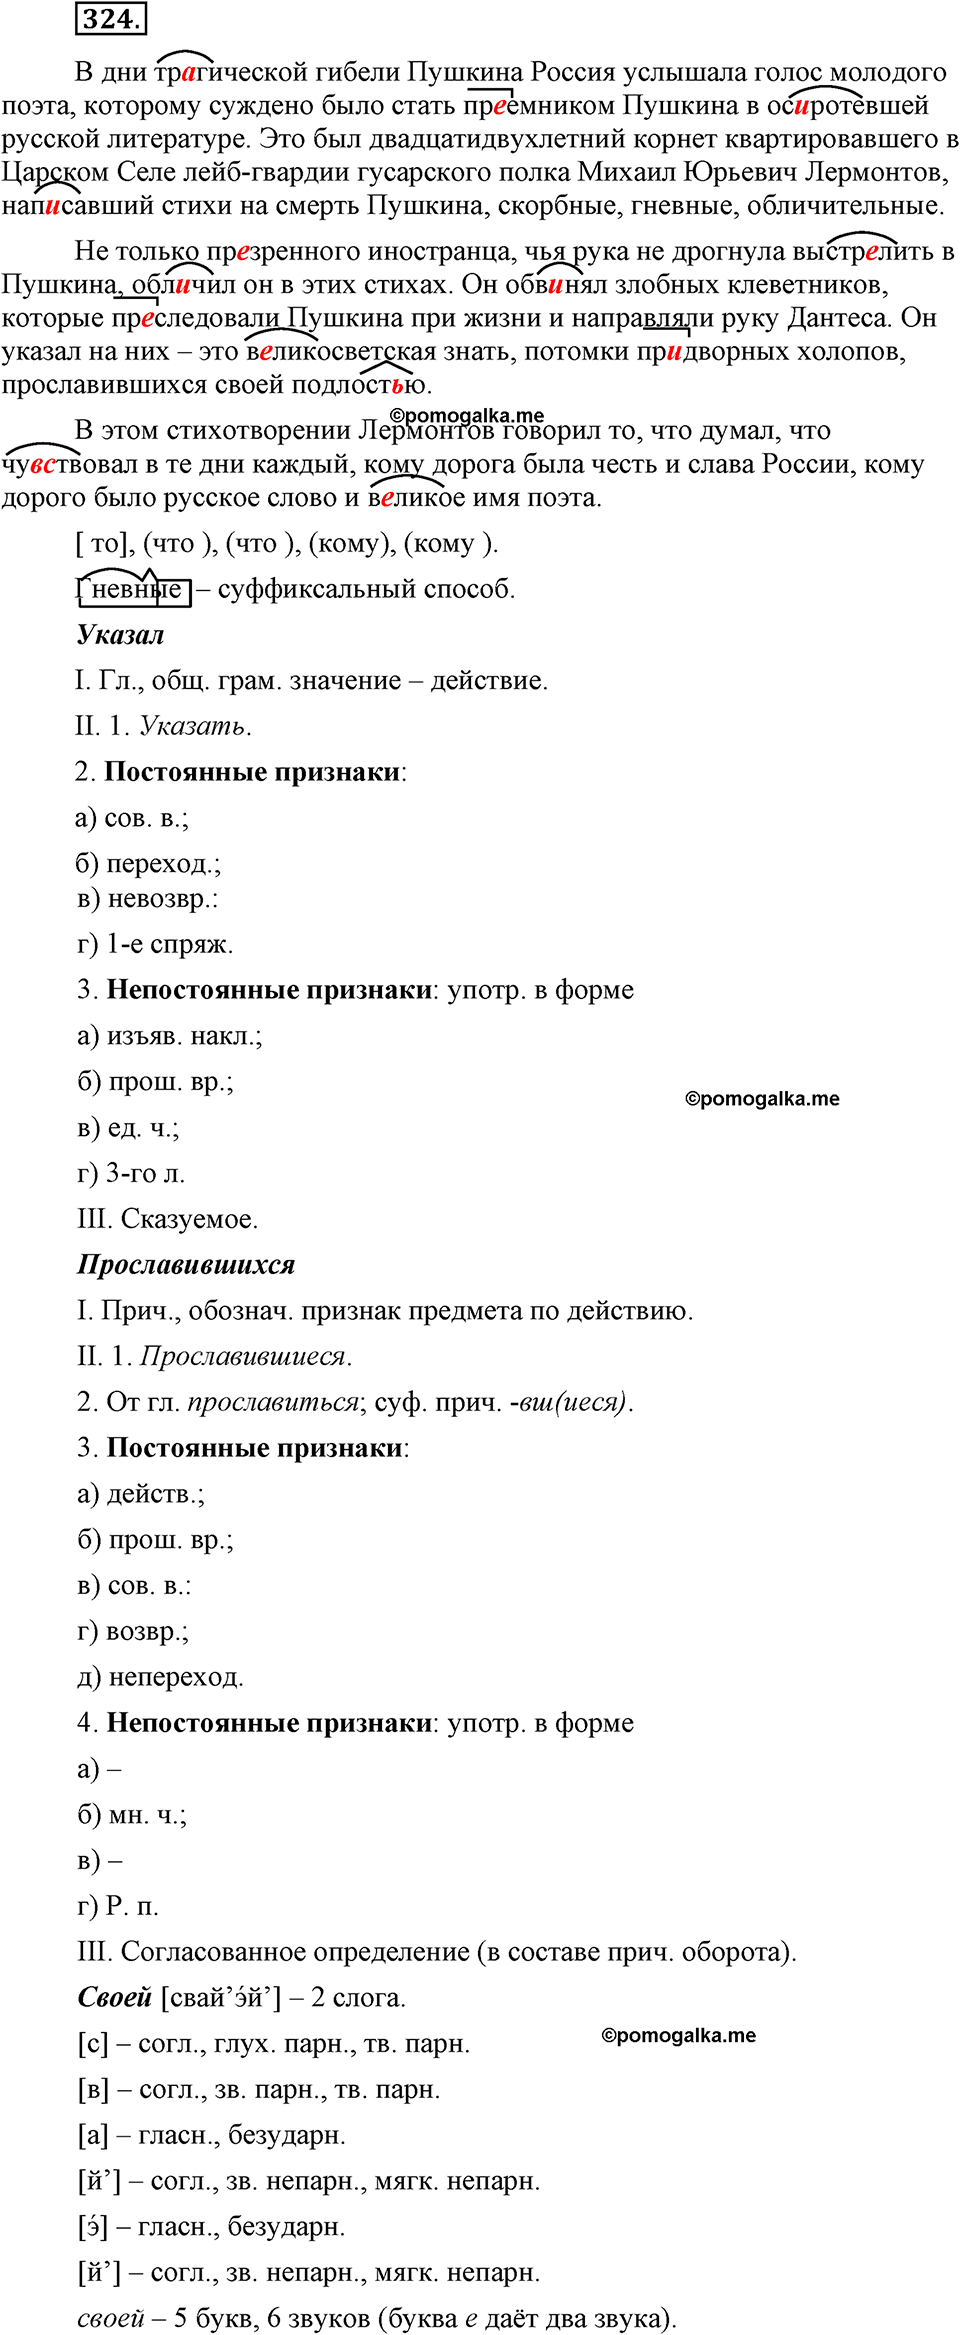 страница 149 номер 324 русский язык 9 класс Бархударов 2011 год